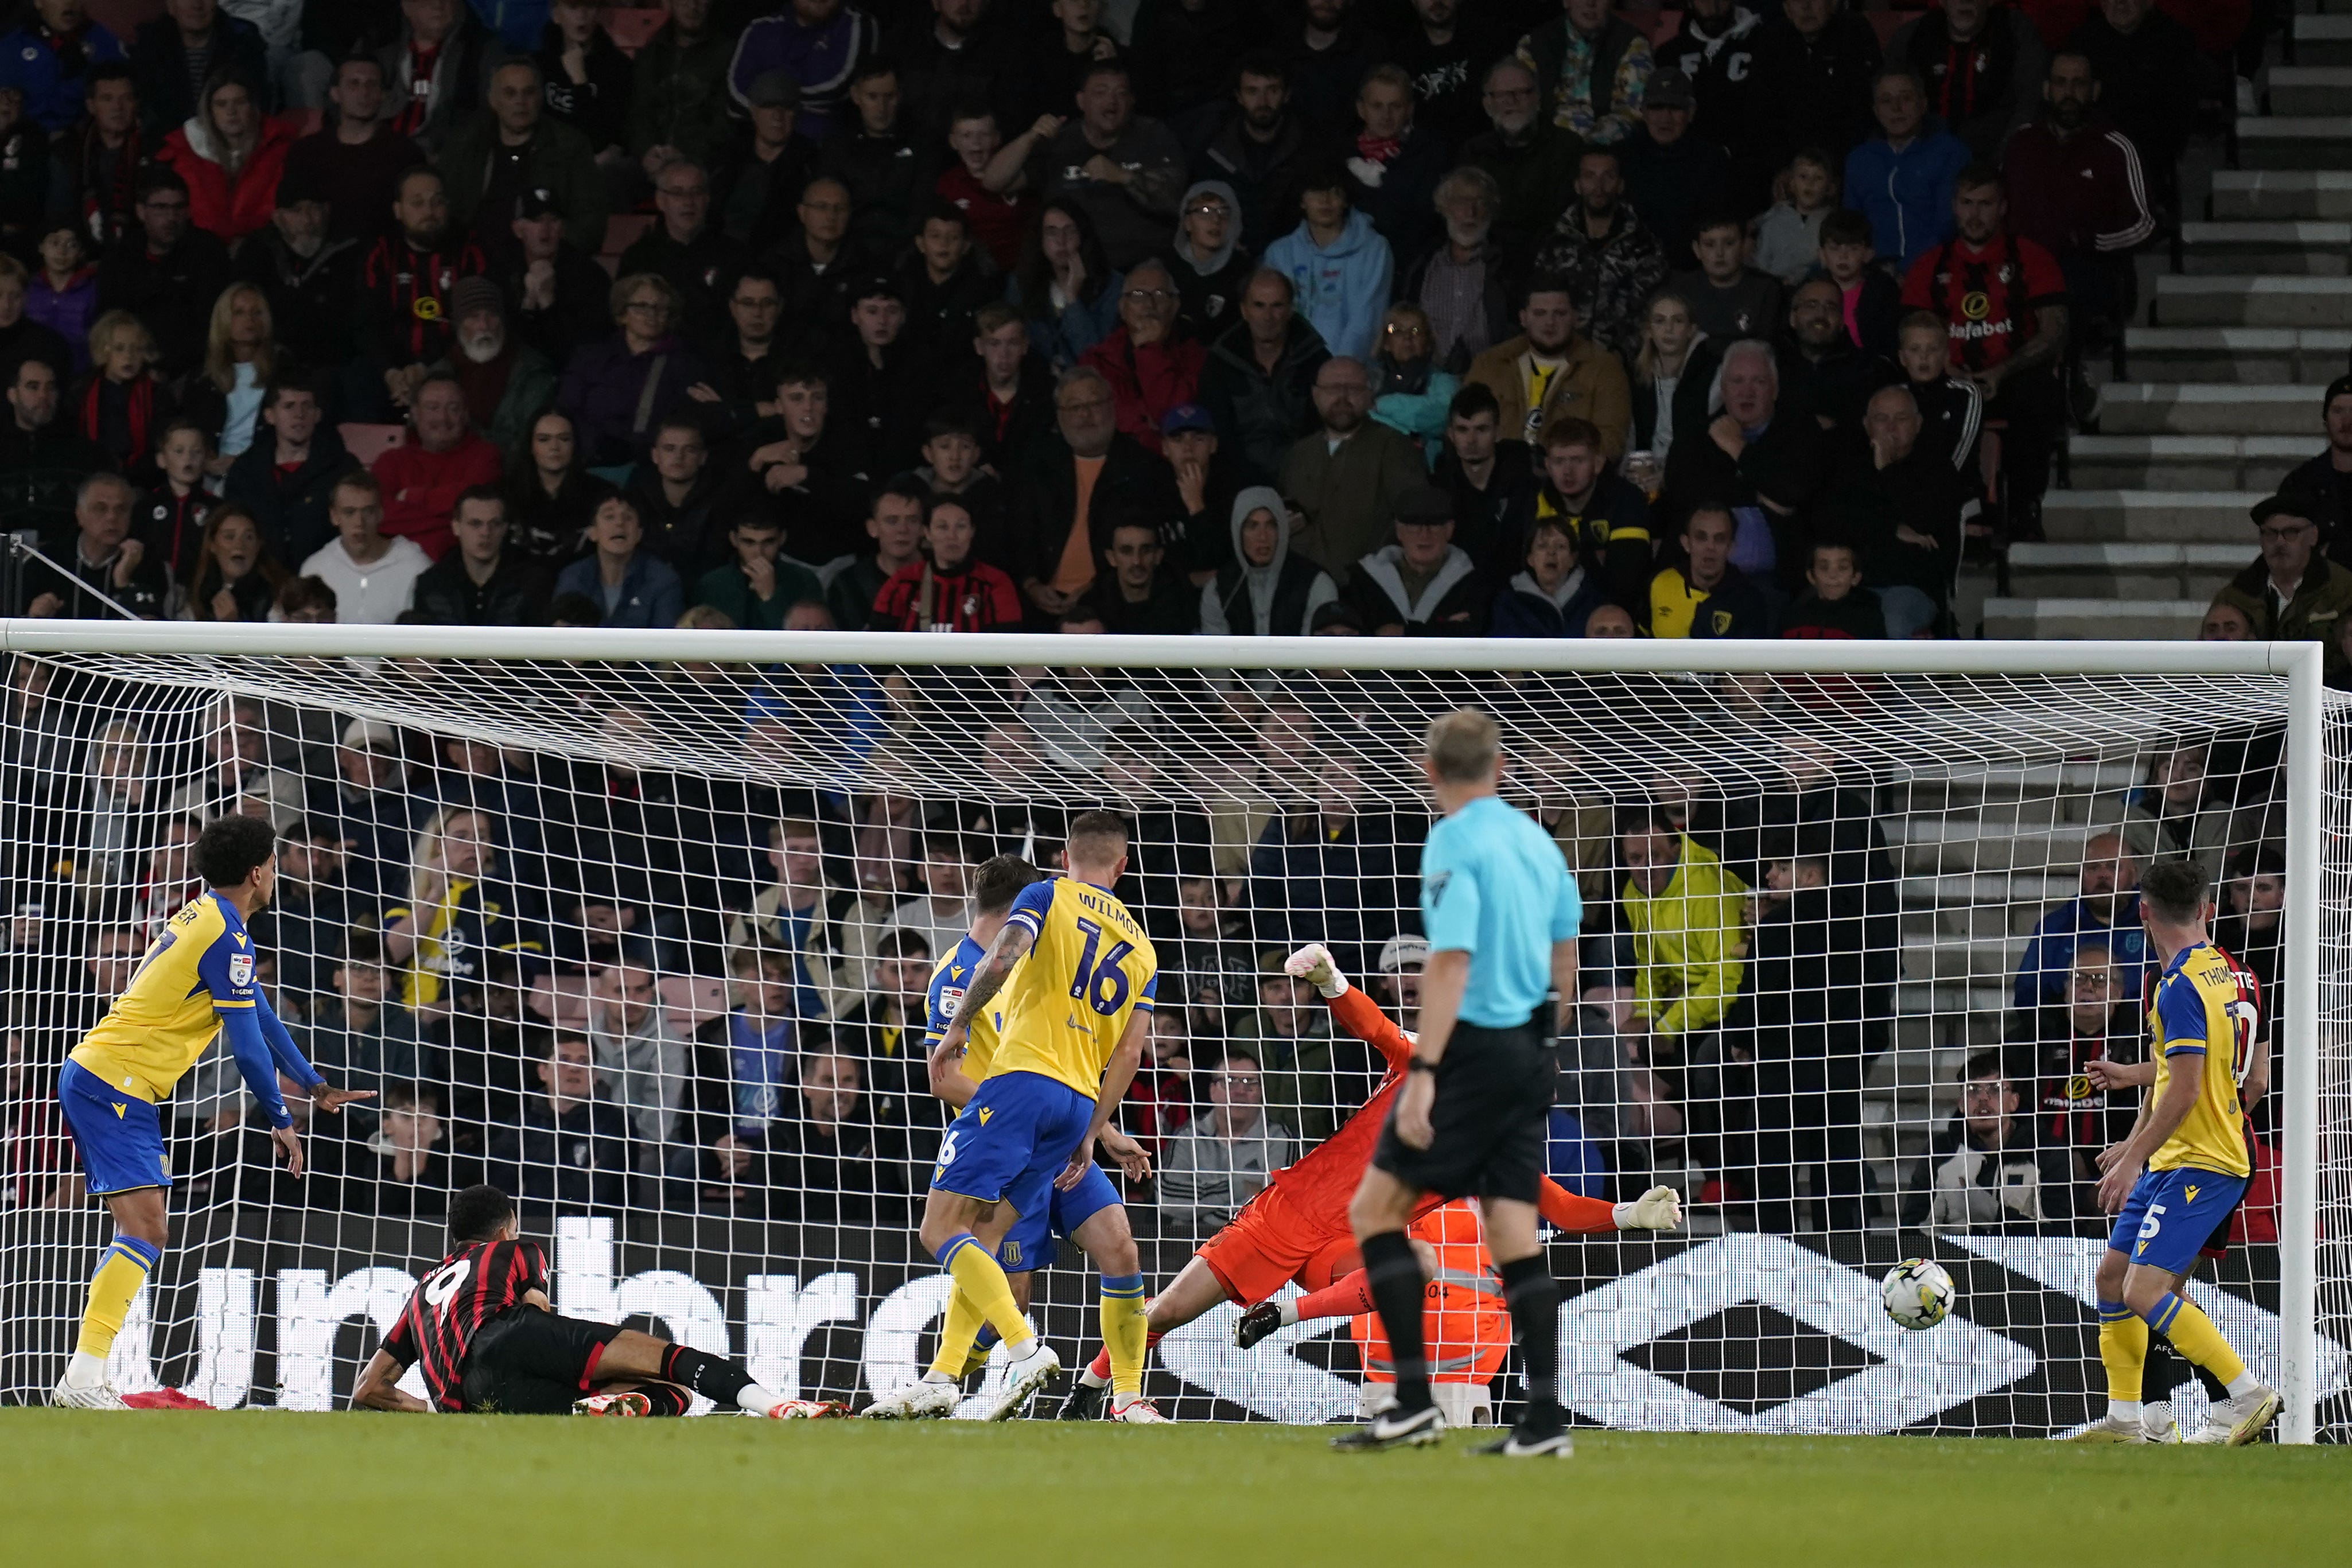 Dominic Solanke scores Bournemouth’s opener against Stoke (Andrew Matthews/PA)